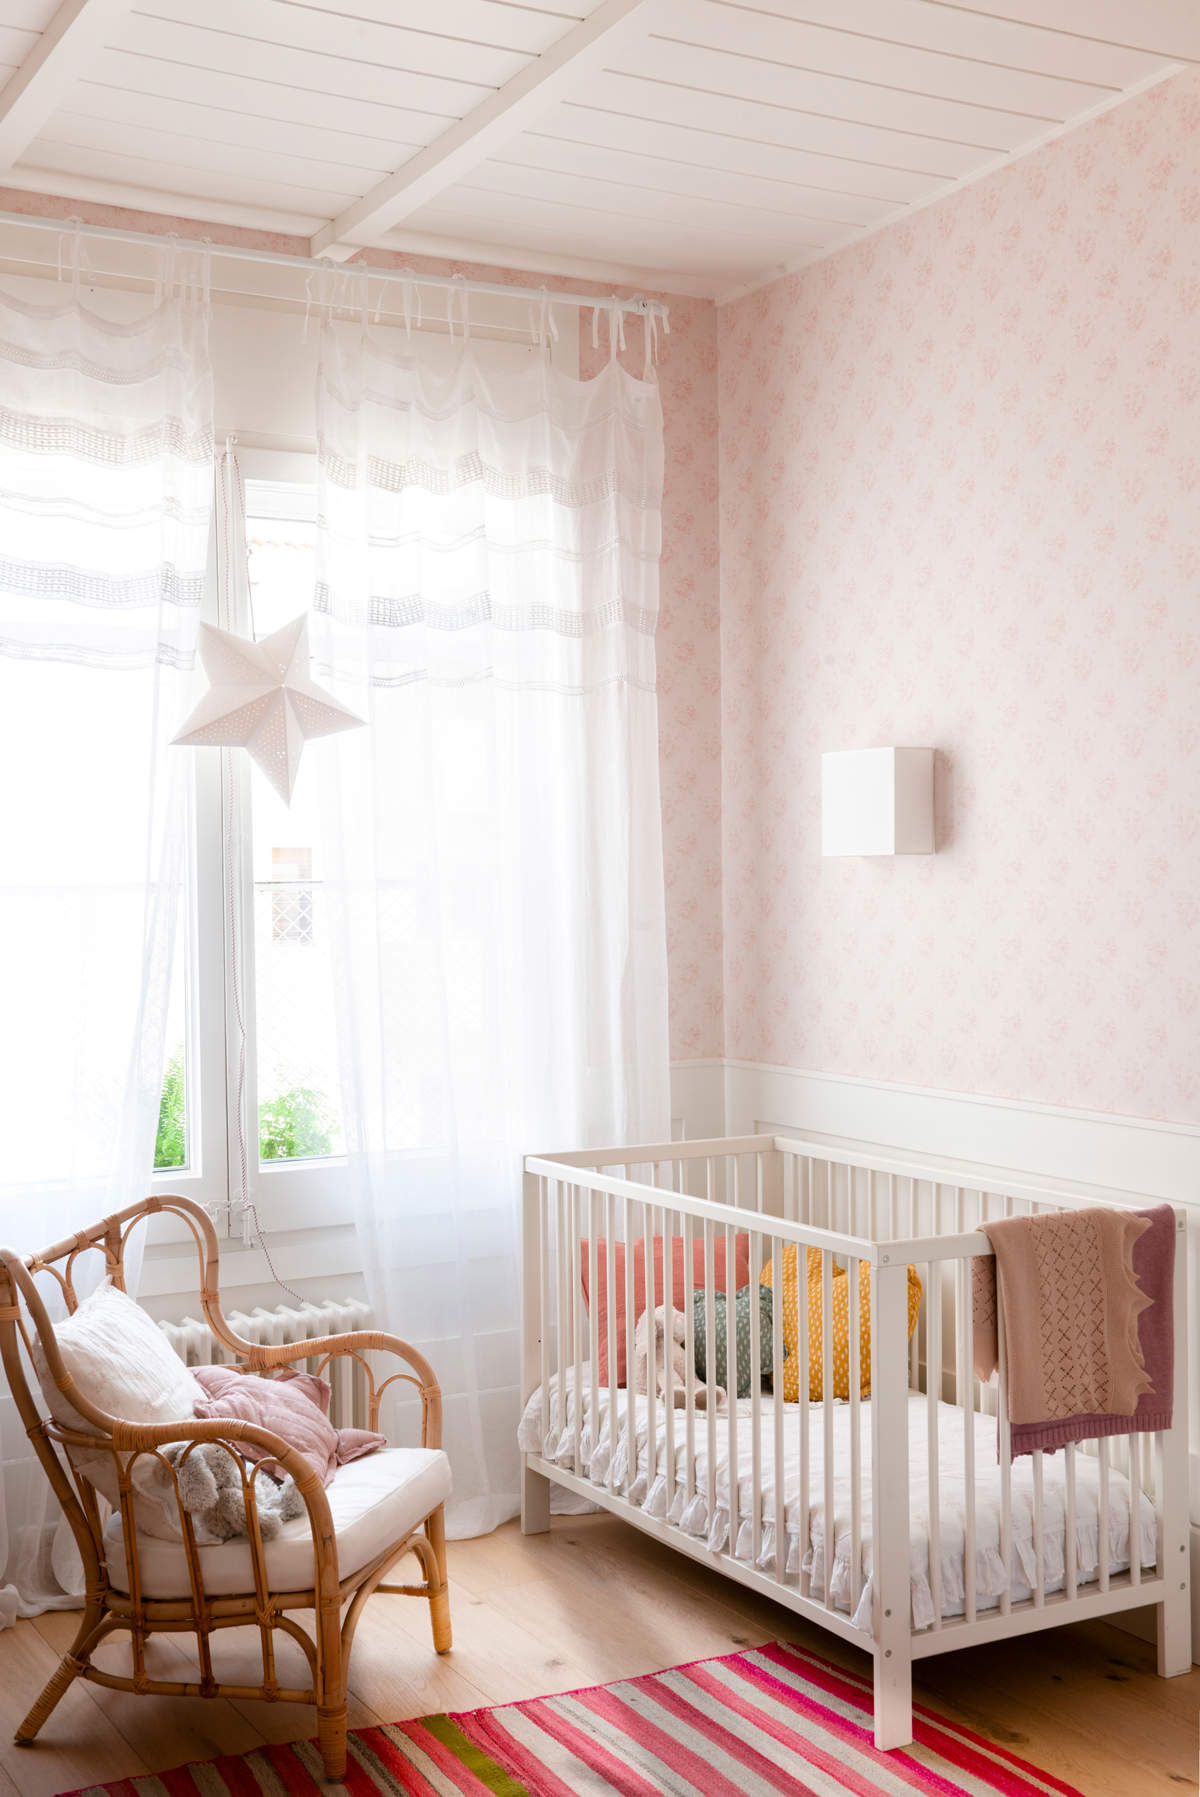 Habitación infantil decorada en blanco y rosa.